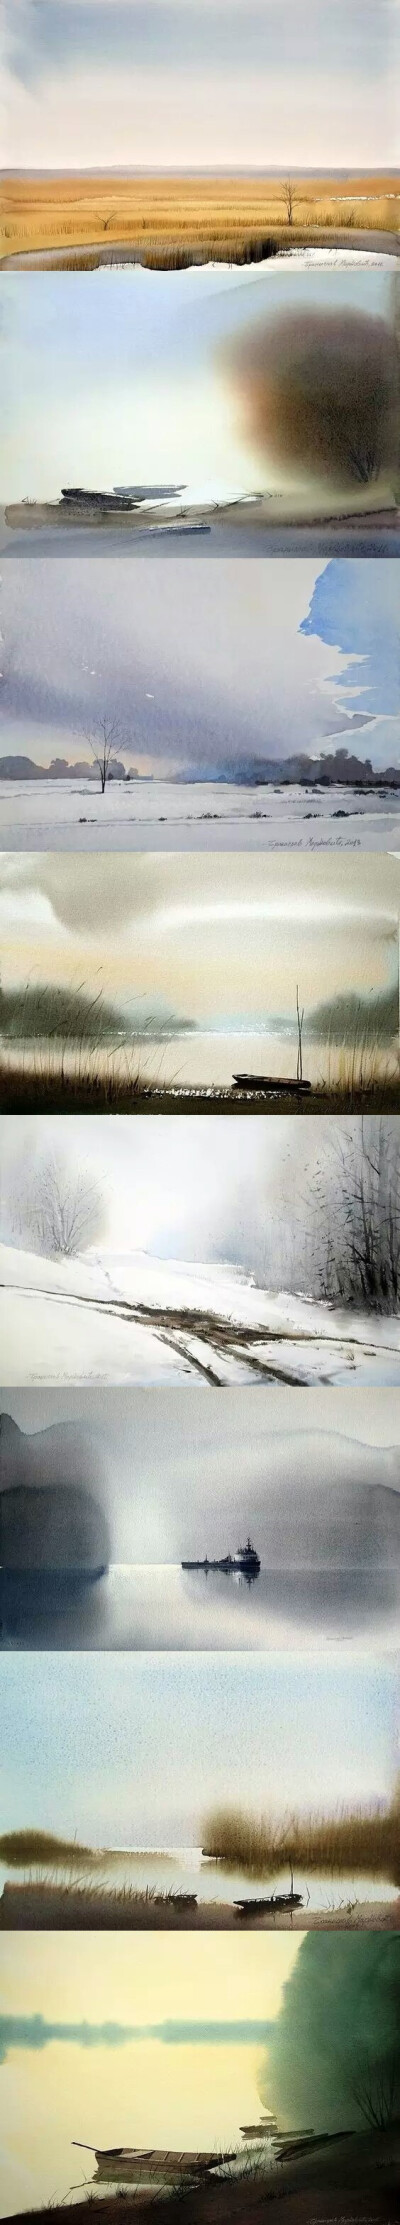 外国艺术家Branislav Marković
意境与留白的水彩画艺术